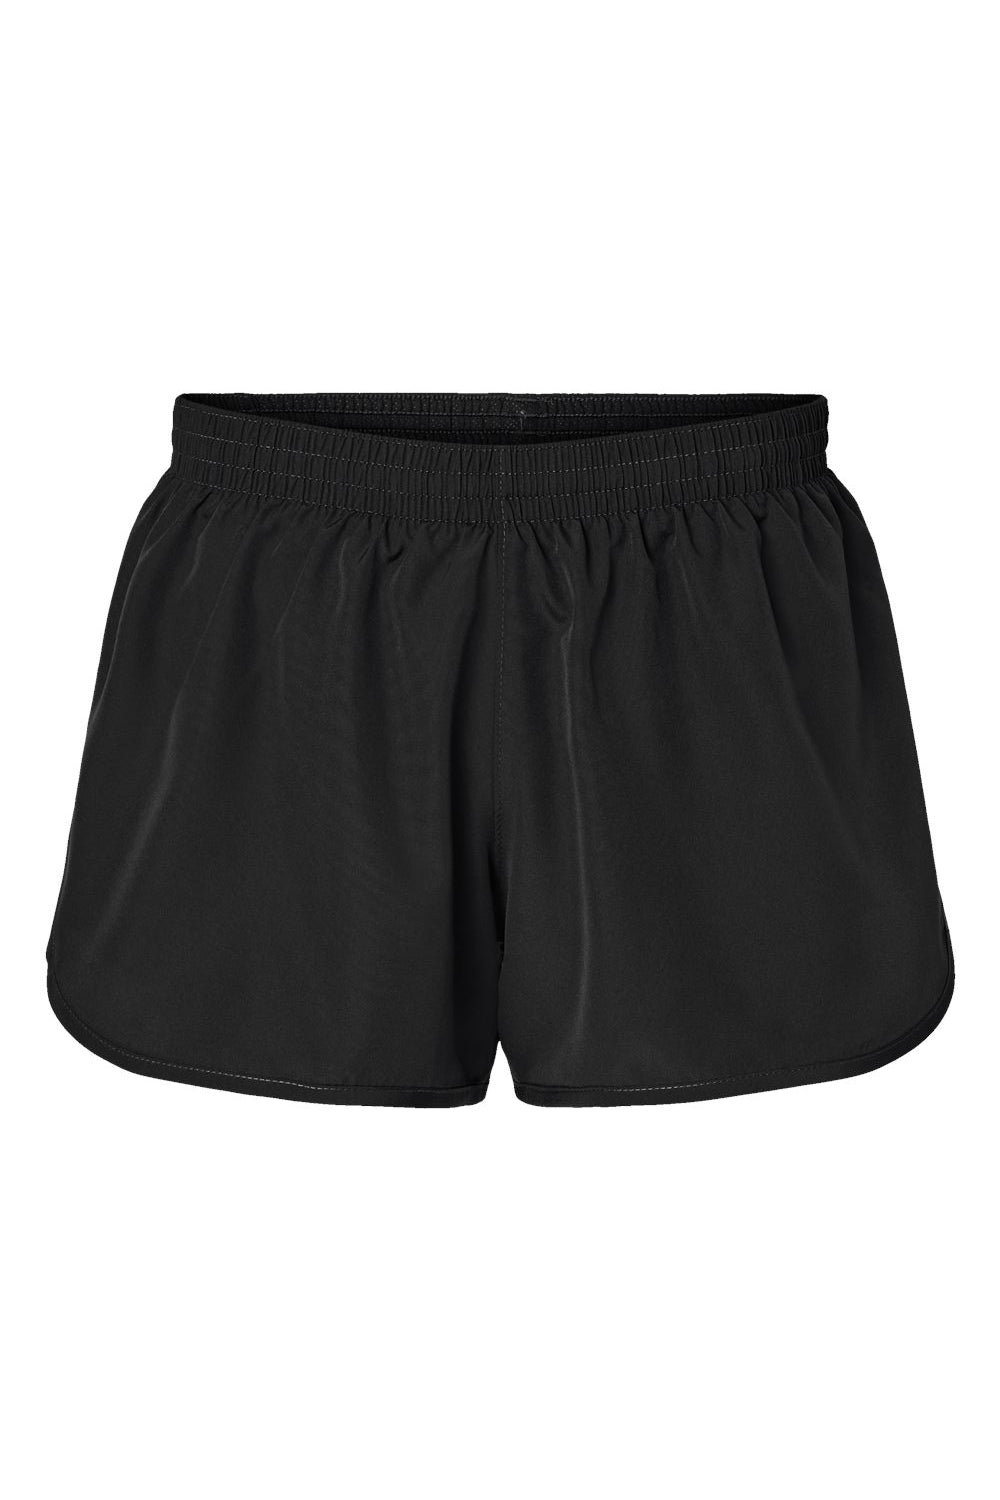 Augusta Sportswear 2430 Womens Wayfarer Moisture Wicking Shorts w/ Internal Pocket Black Flat Front